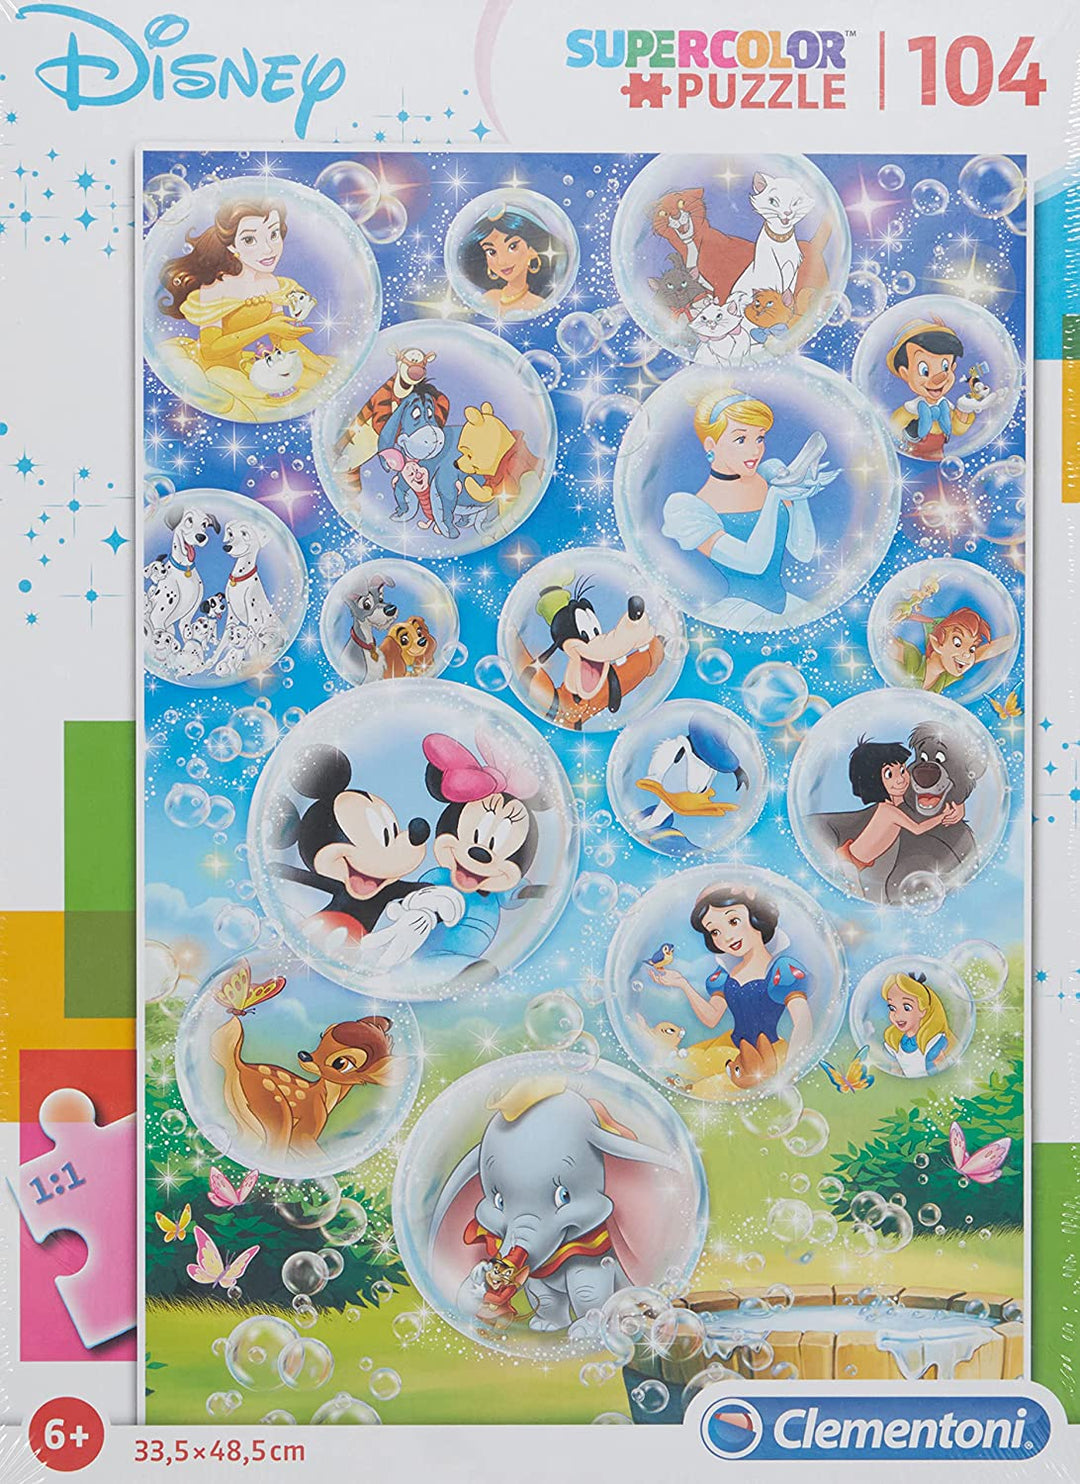 Clementoni - 27119 - Supercolor Puzzle for Children Disney Classic-104 Pieces